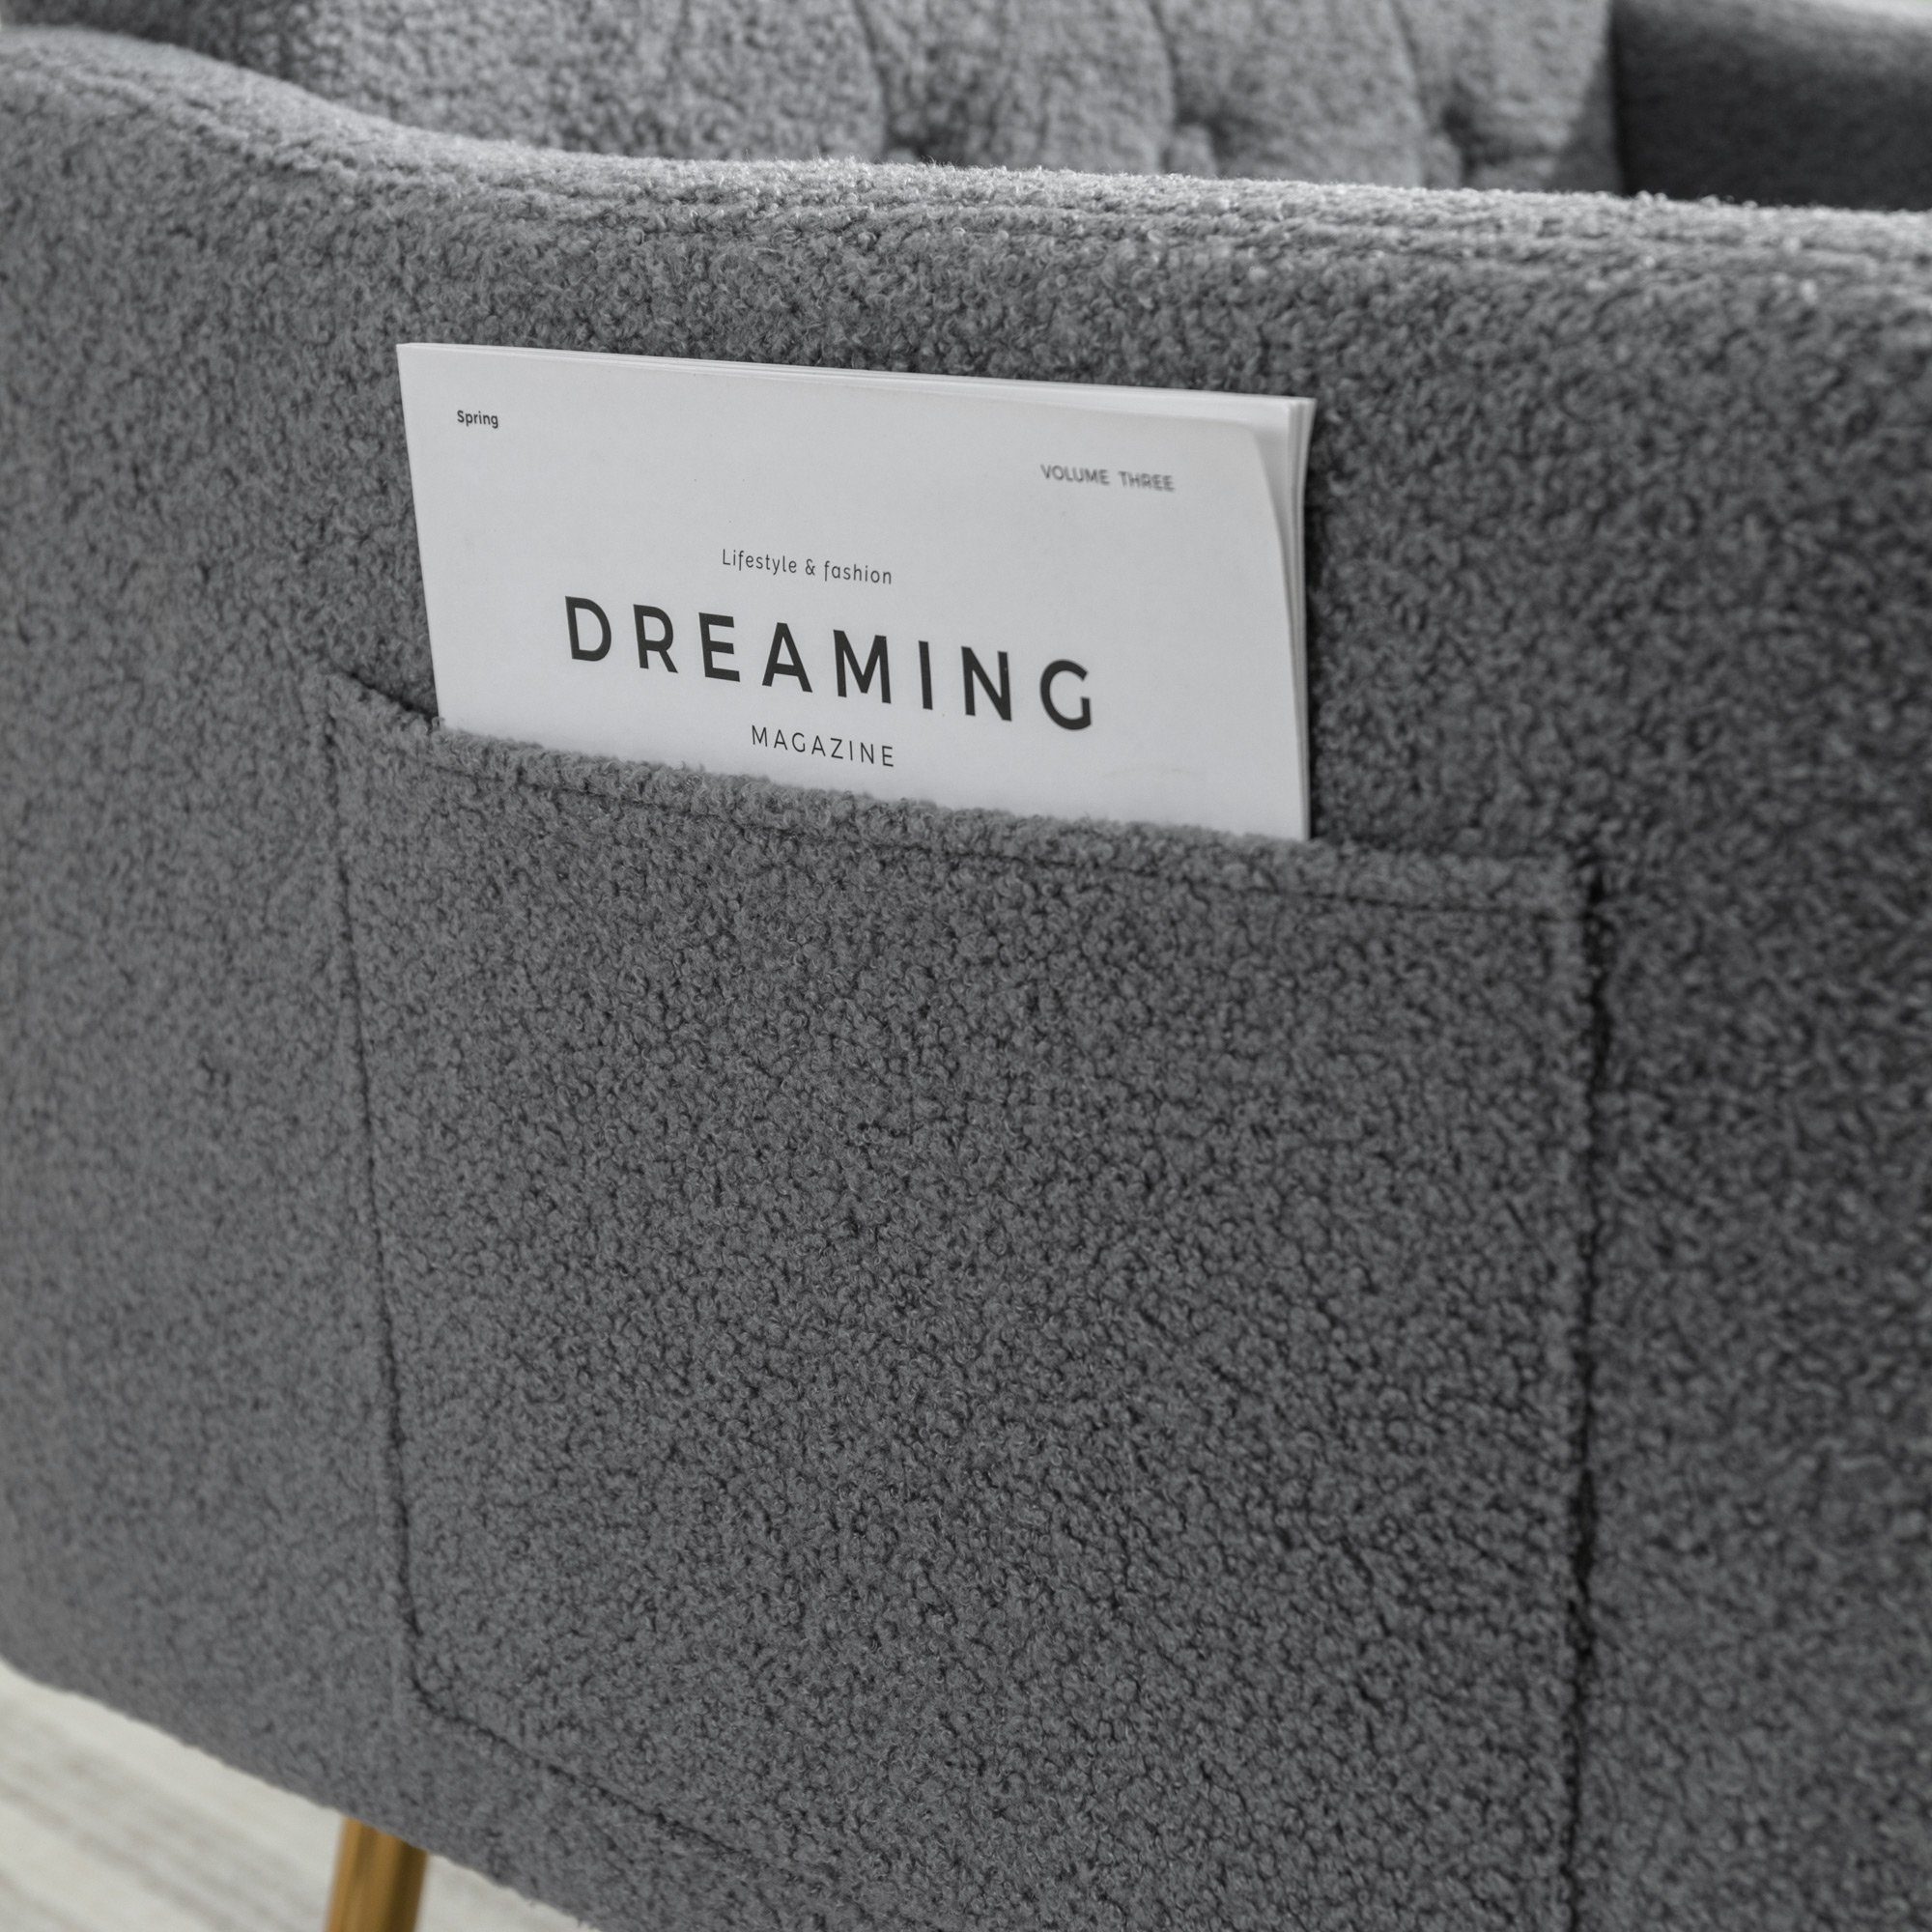 OKWISH Sessel Relaxsessel, Relaxstuhl, goldene Sessel), Metallbeine, oder bequemer grau Lesen geeignet Wohnzimmerstuhl, bequemer Reißverschluss-Design Sessel, (Wohnzimmerstuhl, zum Entspannen, mit Teddy-Samt-Stuhl